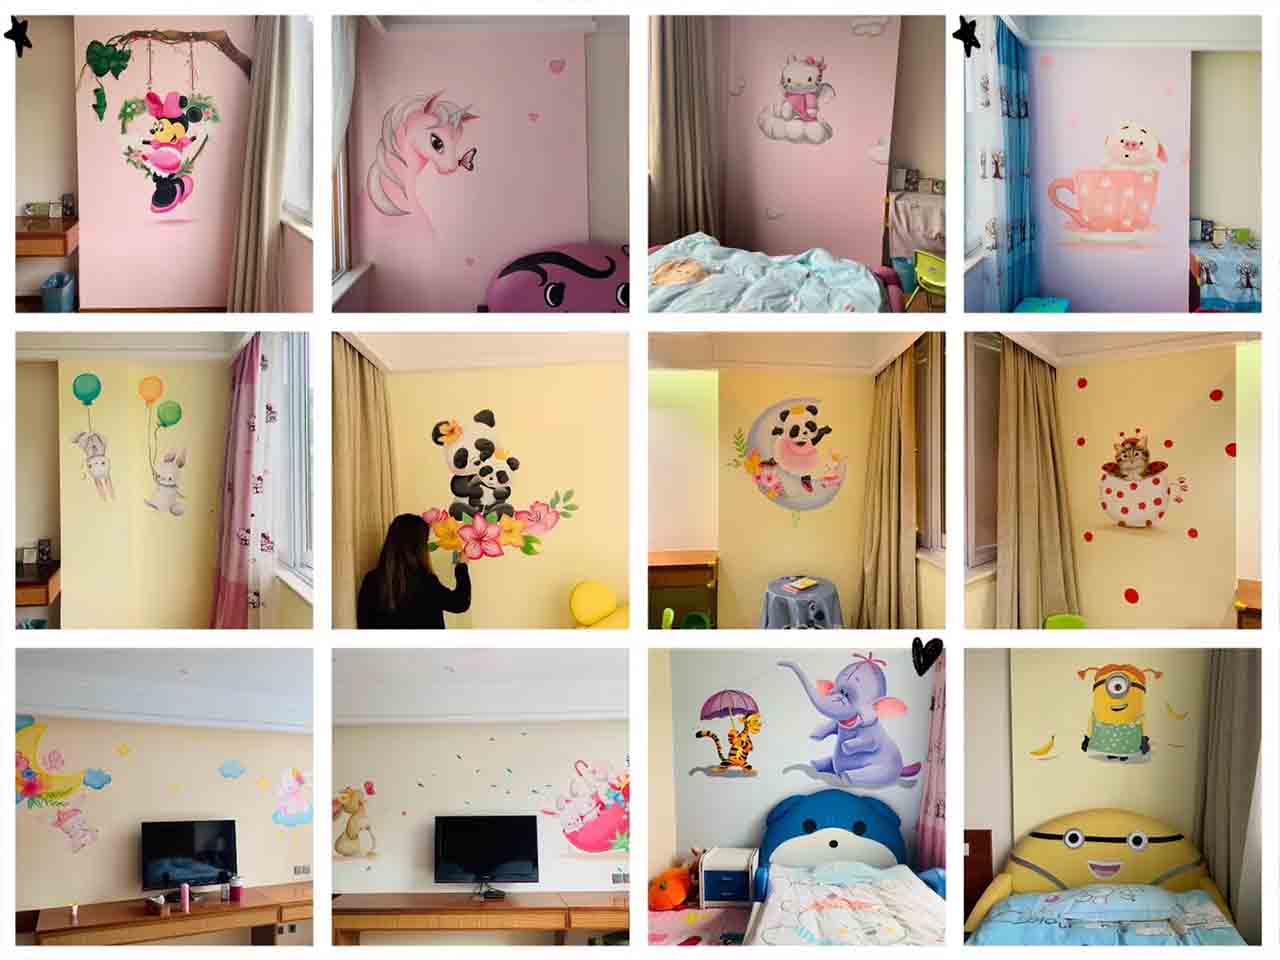 酒店儿童房工装KTV可爱卡通墙绘壁画彩绘涂鸦手绘示意图